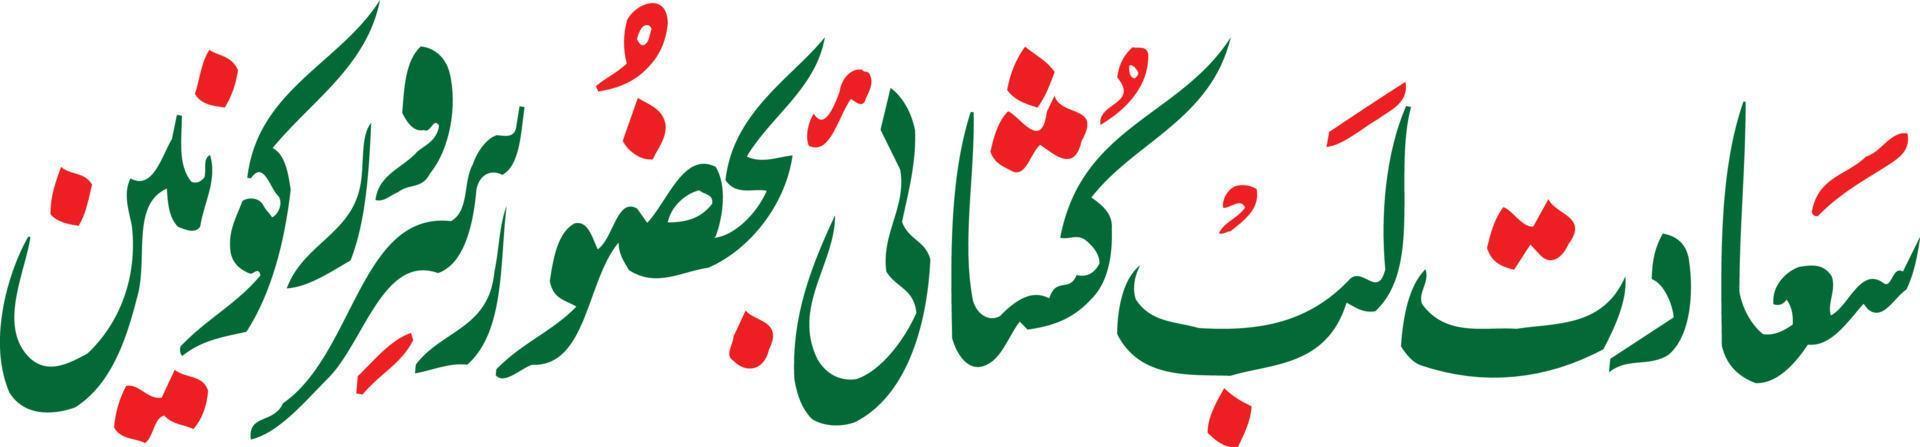 saadat lib koshay título islámico urdu caligrafía árabe vector libre